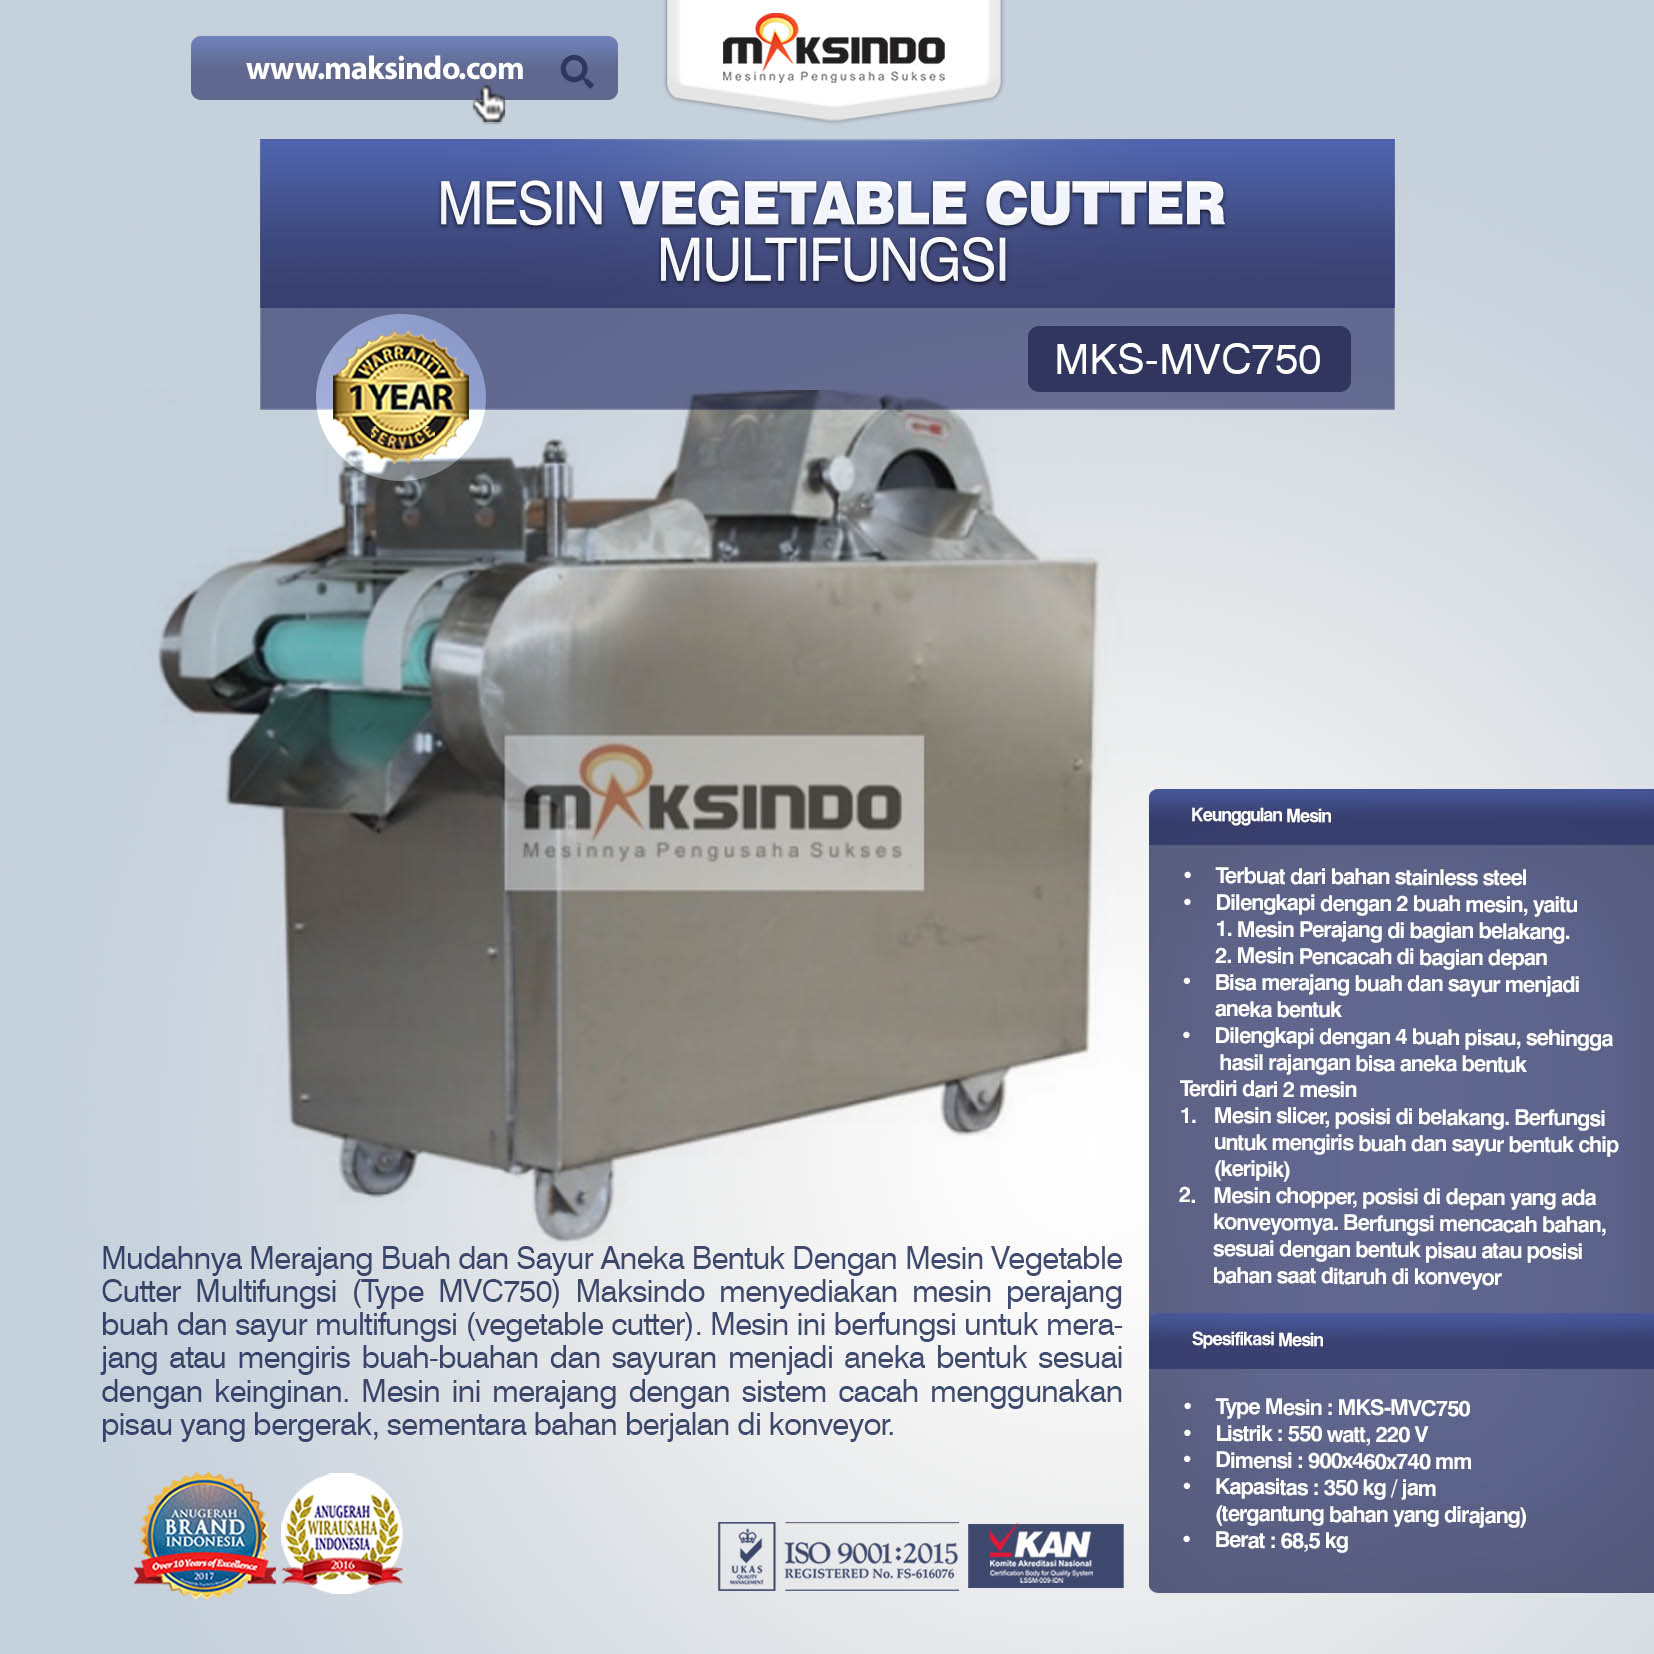 Jual Mesin Vegetable Cutter Multifungsi (Type MVC750) di Banjarmasin